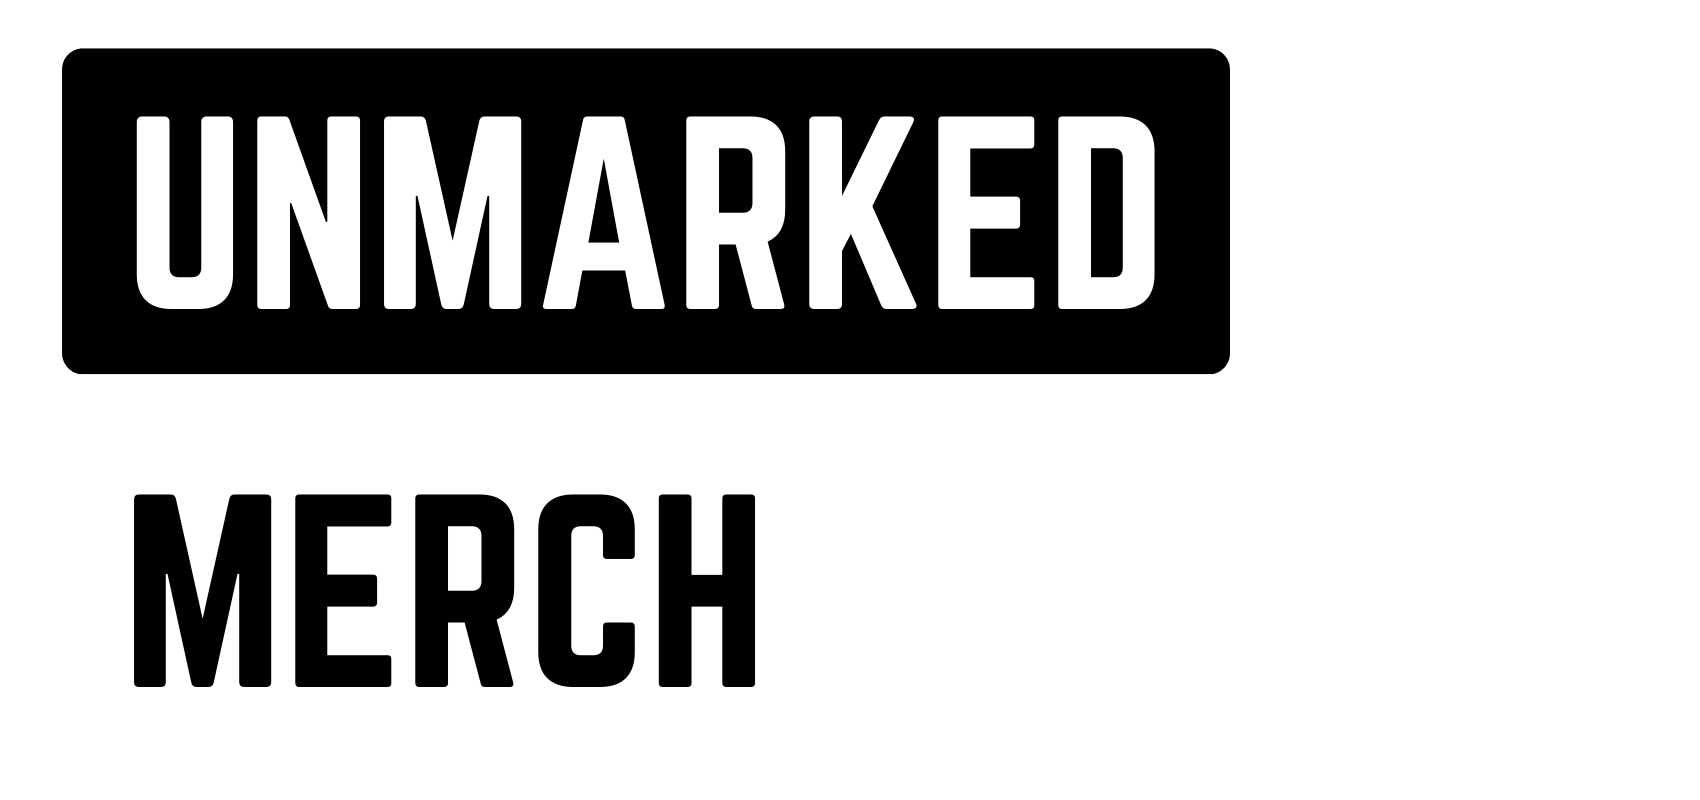 Unmarked Merch LLC